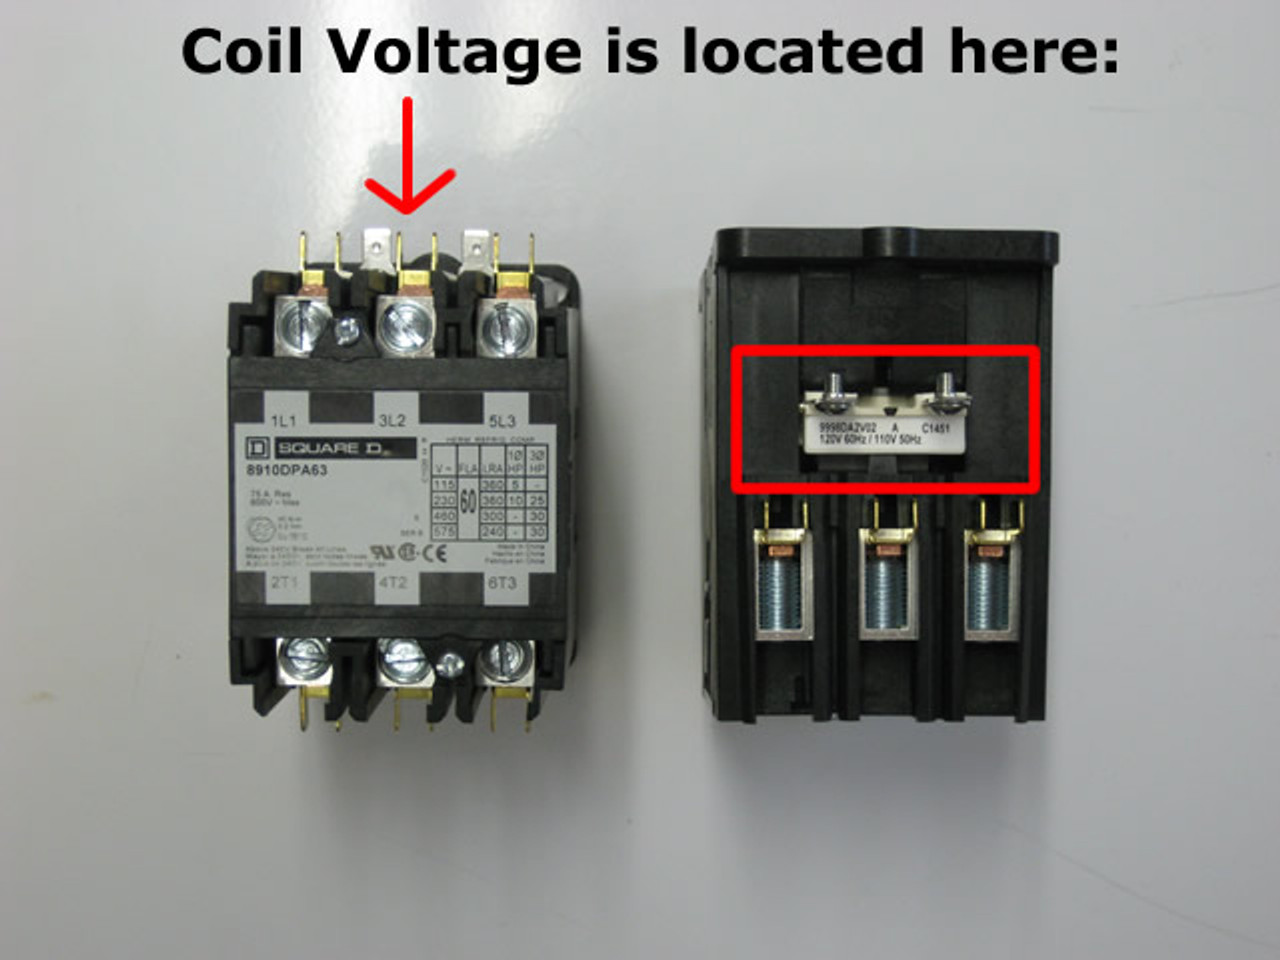 Square D 8910DPA62V09 coil voltage location